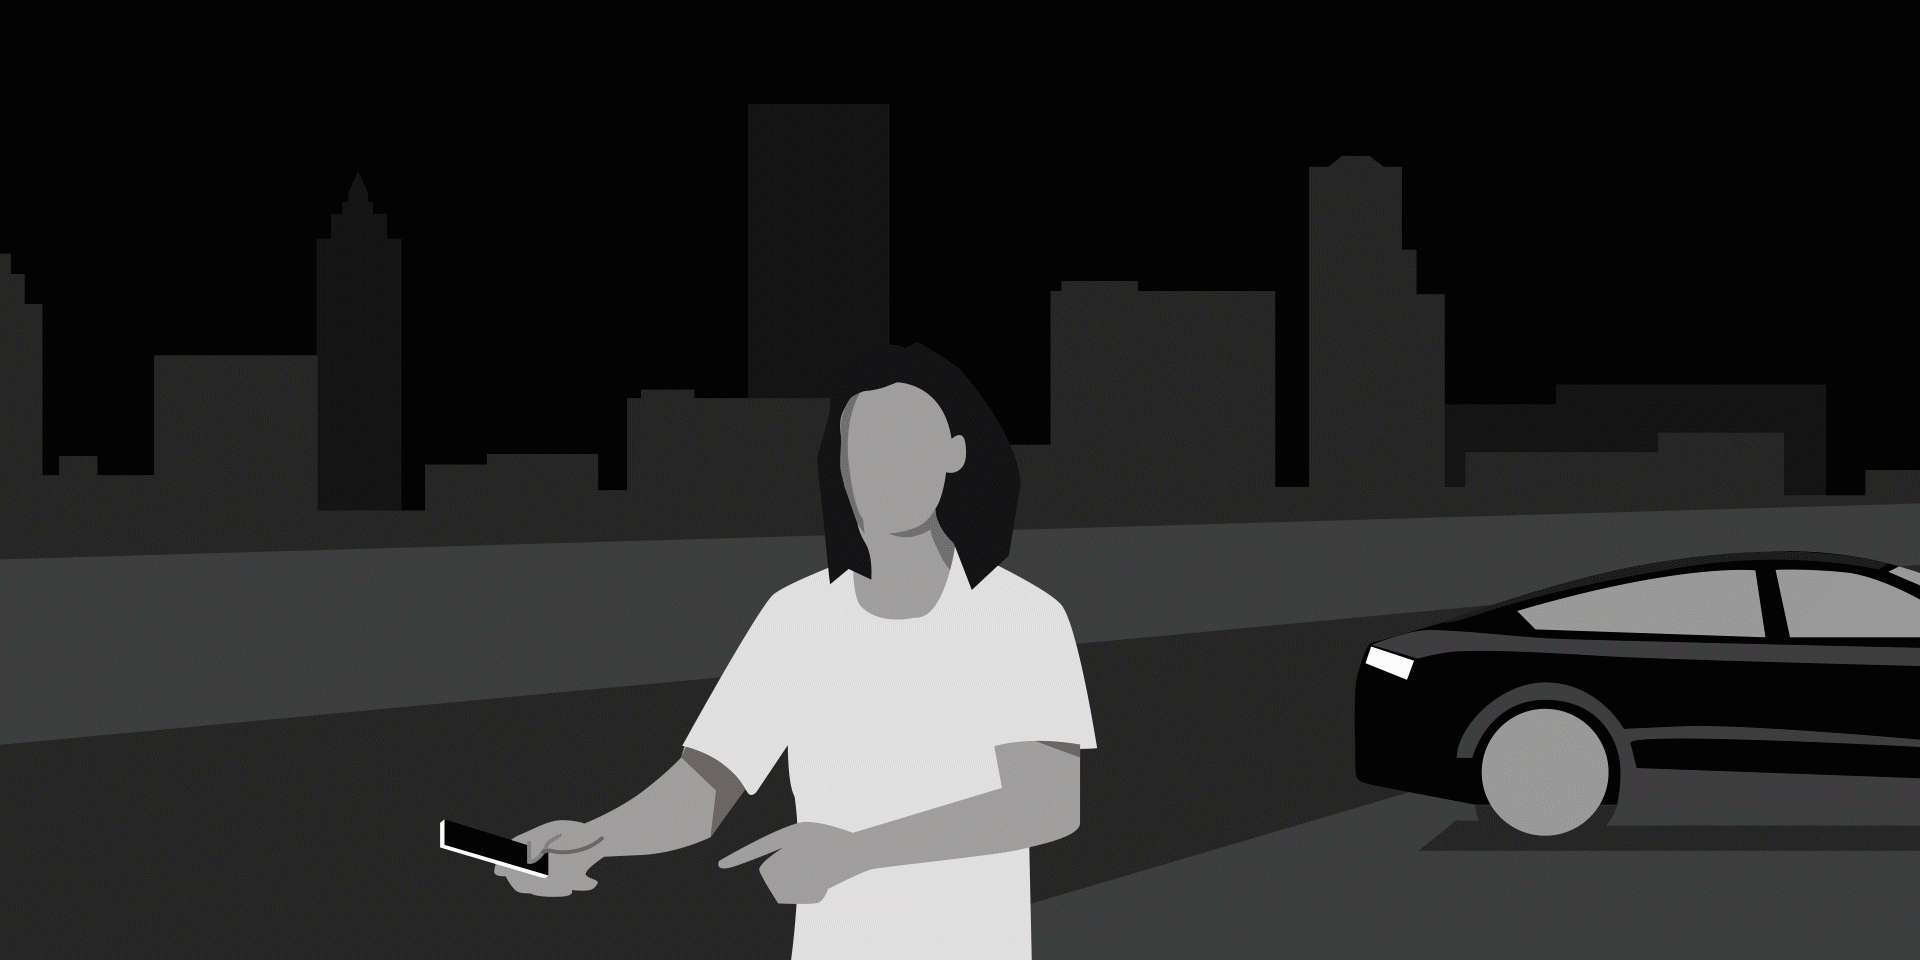 Diese Illustration zeigt eine Person mit einem Smartphone und ein Fahrzeug im Hintergrund. Symbole im Vordergrund deuten an, dass die Person über ihr Handy mit dem Fahrzeug vernetzt ist und diverse Funktionen zur Fahrzeugsteuerung nutzen kann.